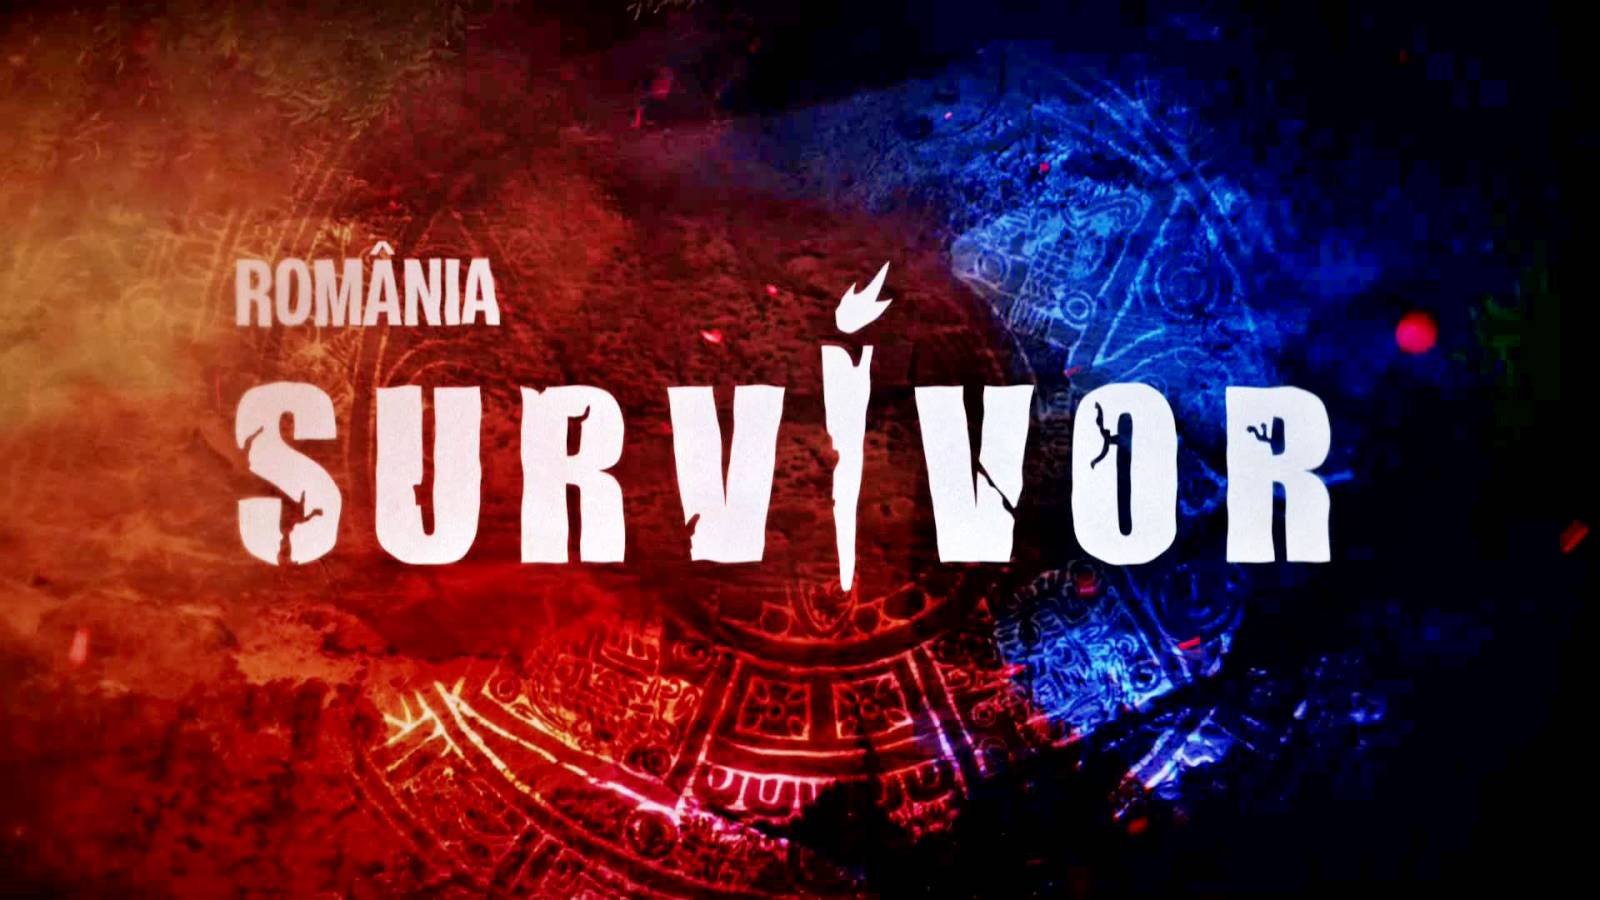 Survivor SECRET SIDSTE GANG Konkurrenter afslørede PRO TV